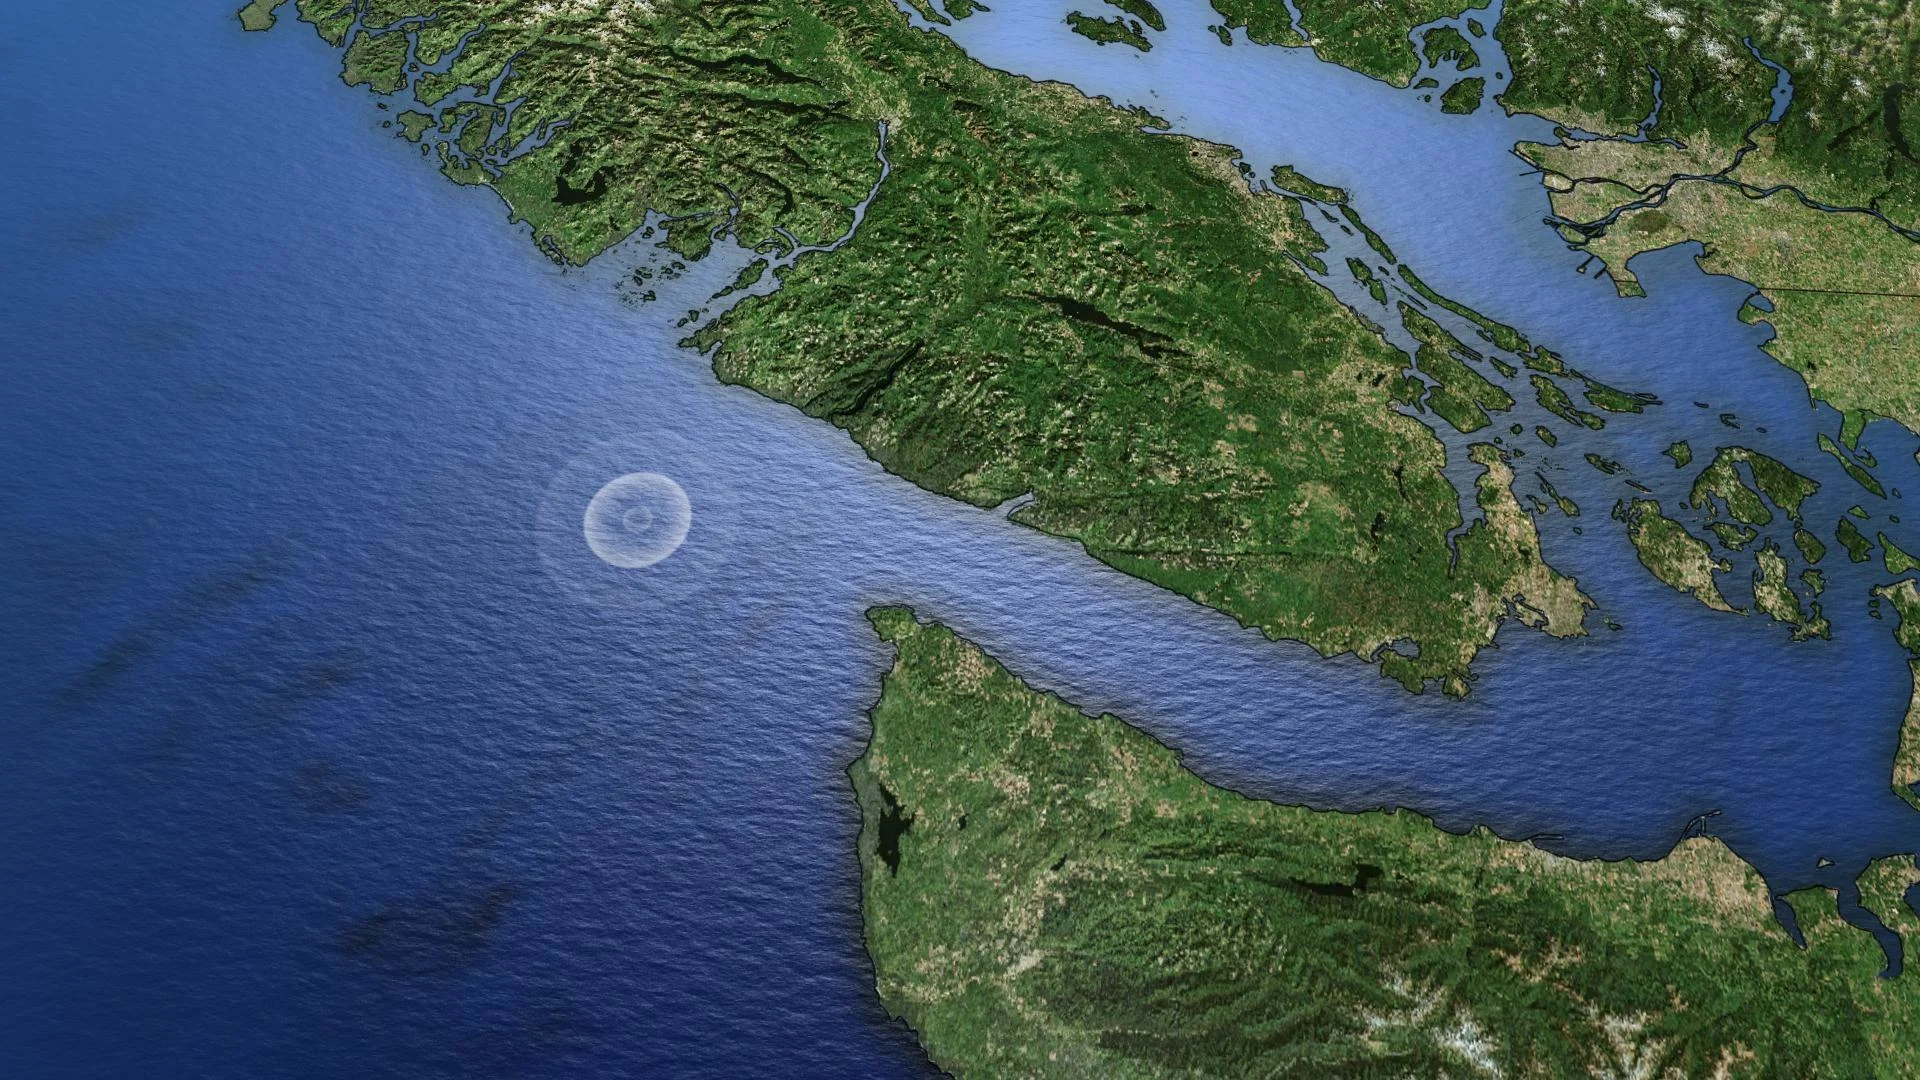 Magnitude 4.5 earthquake detected off B.C. coast